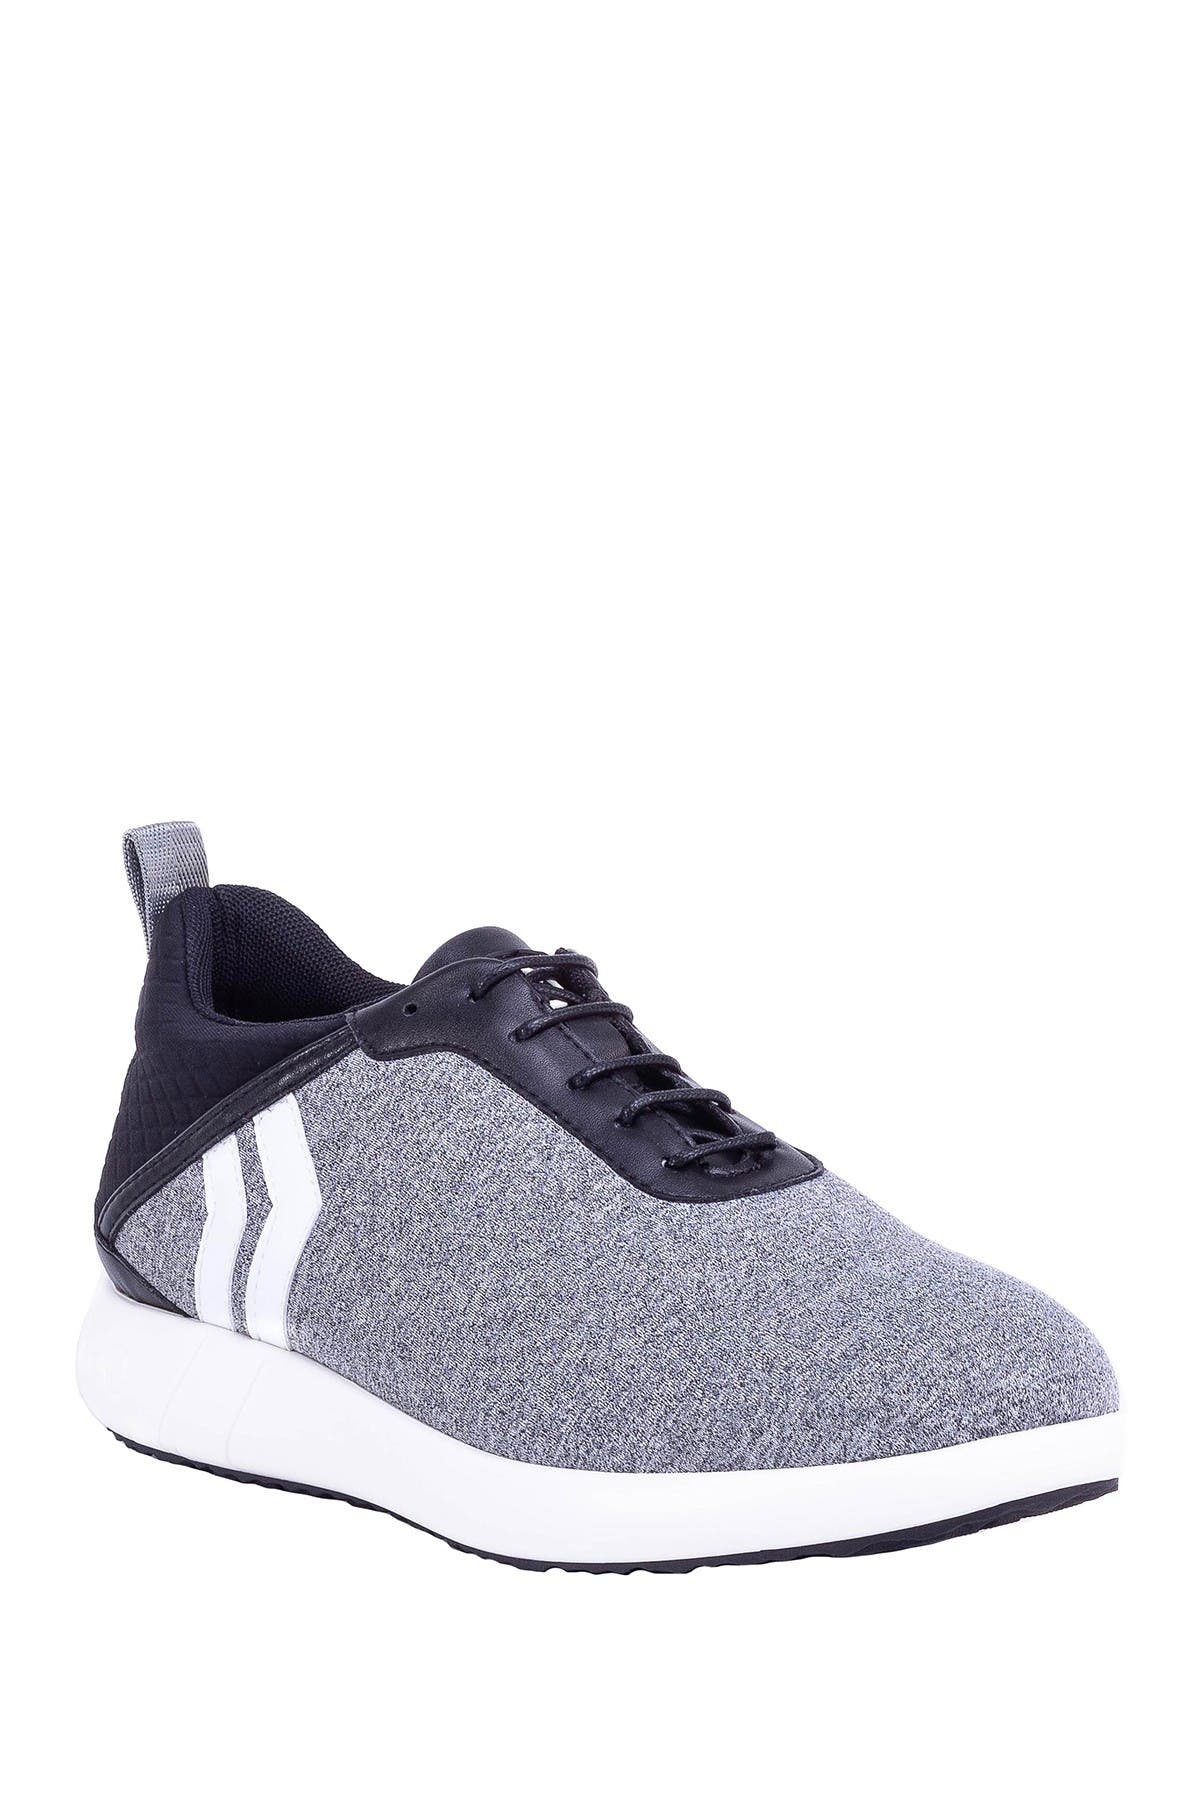 Kicko Avalon Sneaker In Grey